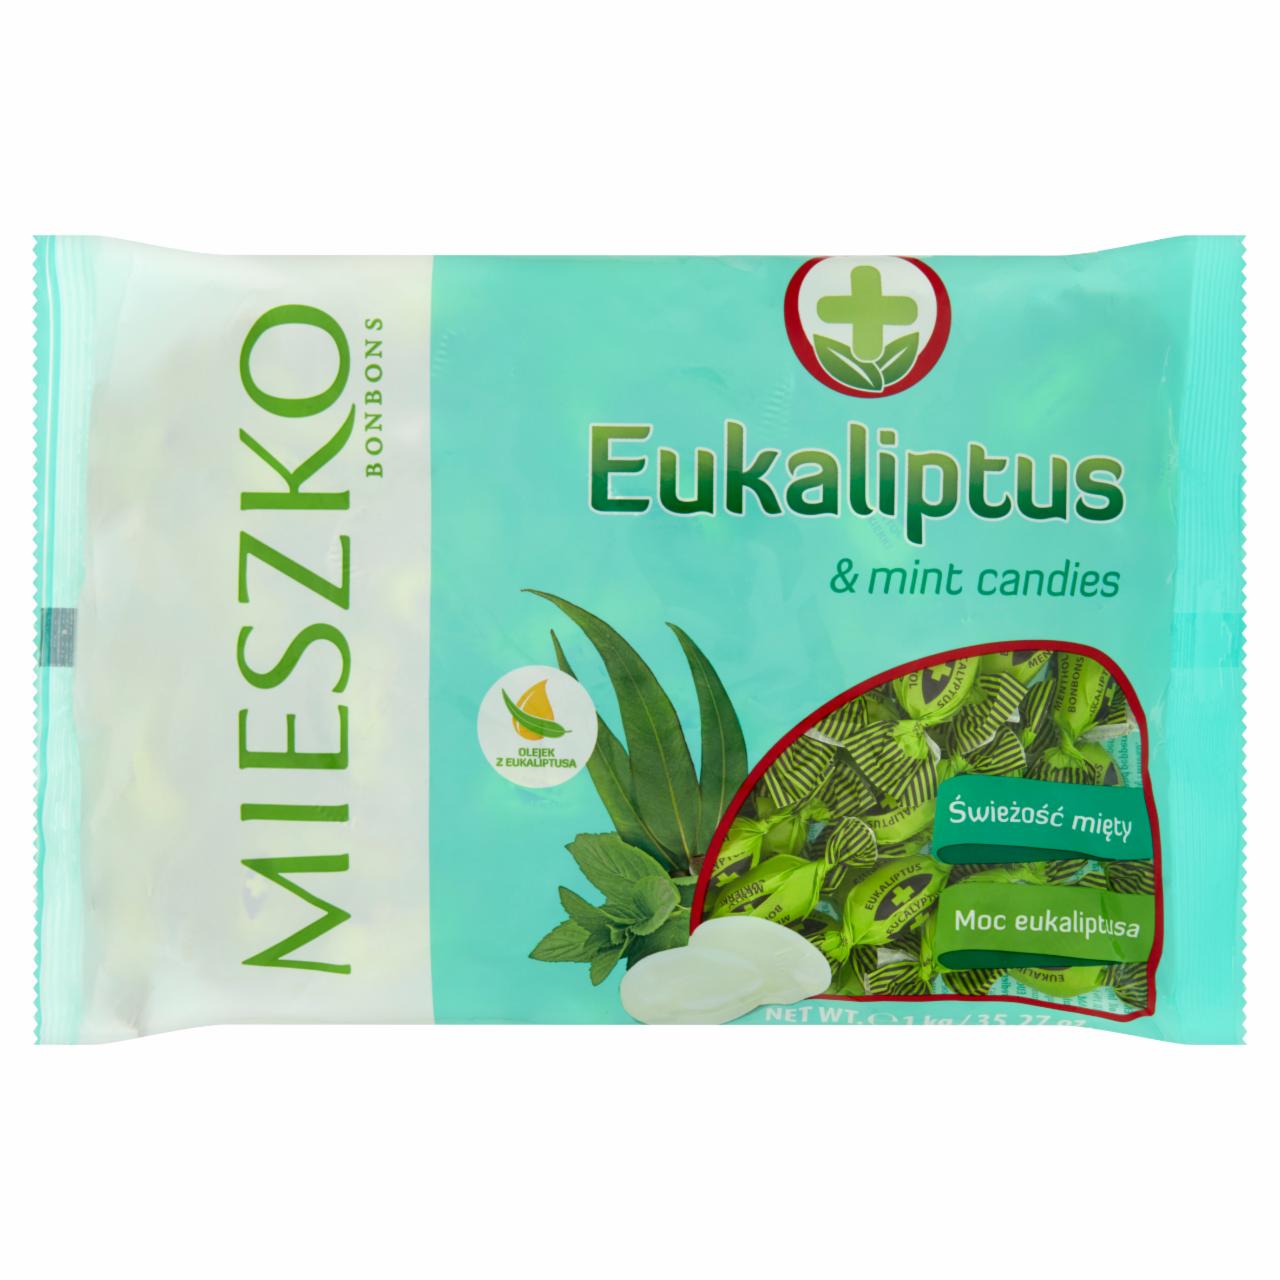 Zdjęcia - Mieszko Eukaliptus Karmelki twarde z olejkiem eukaliptusowym i miętowym 1 kg